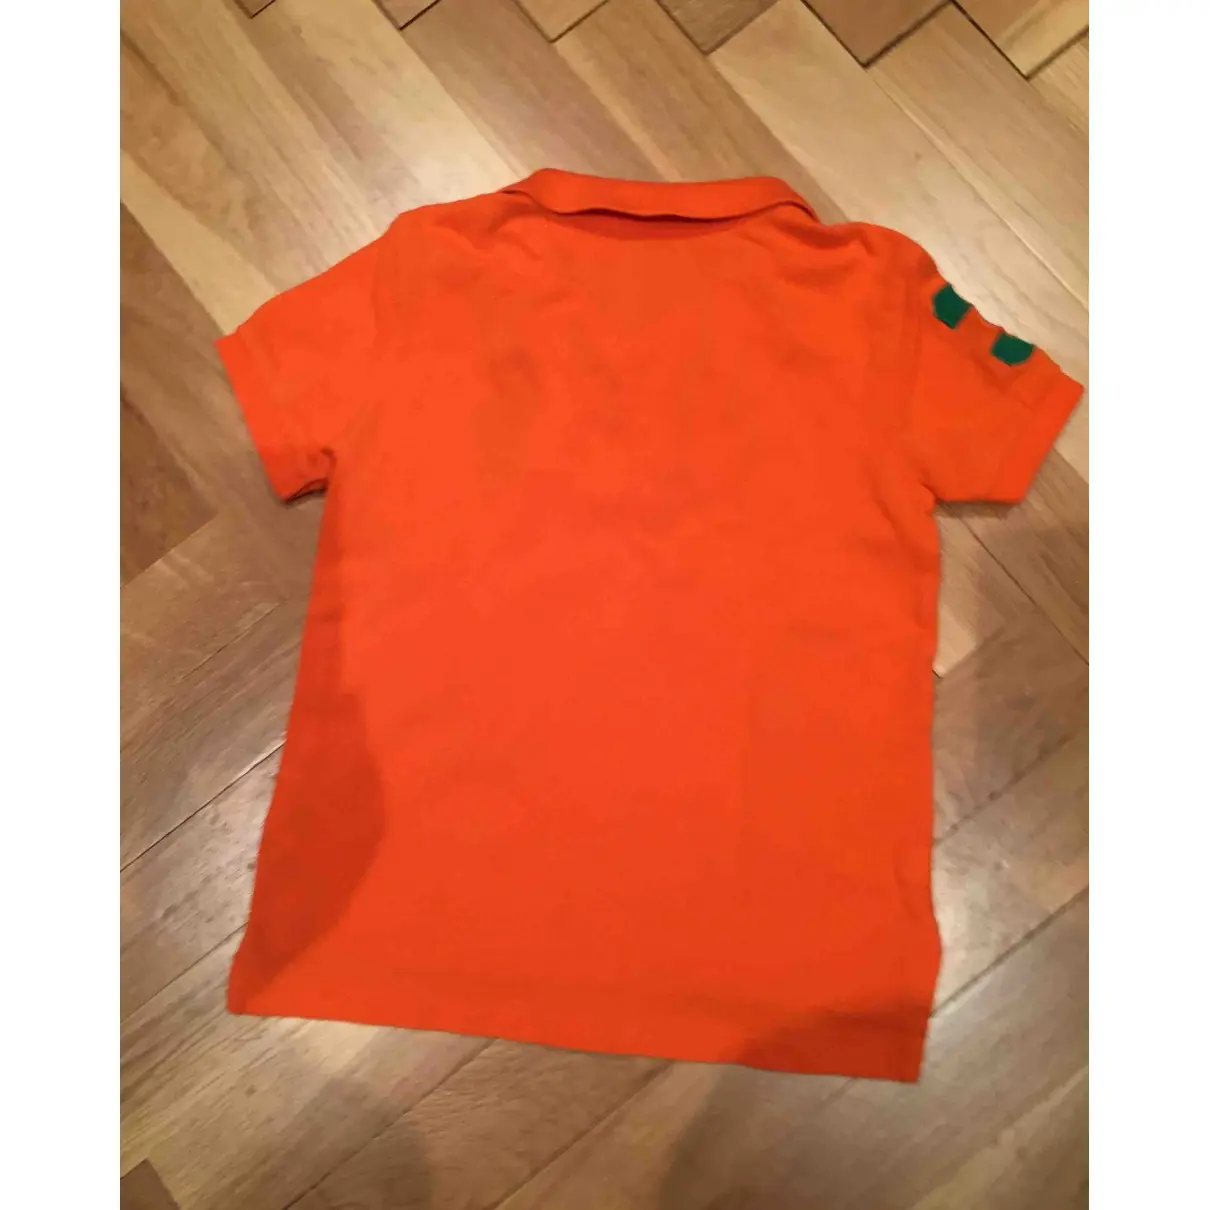 Buy Polo Ralph Lauren Orange Cotton Top online